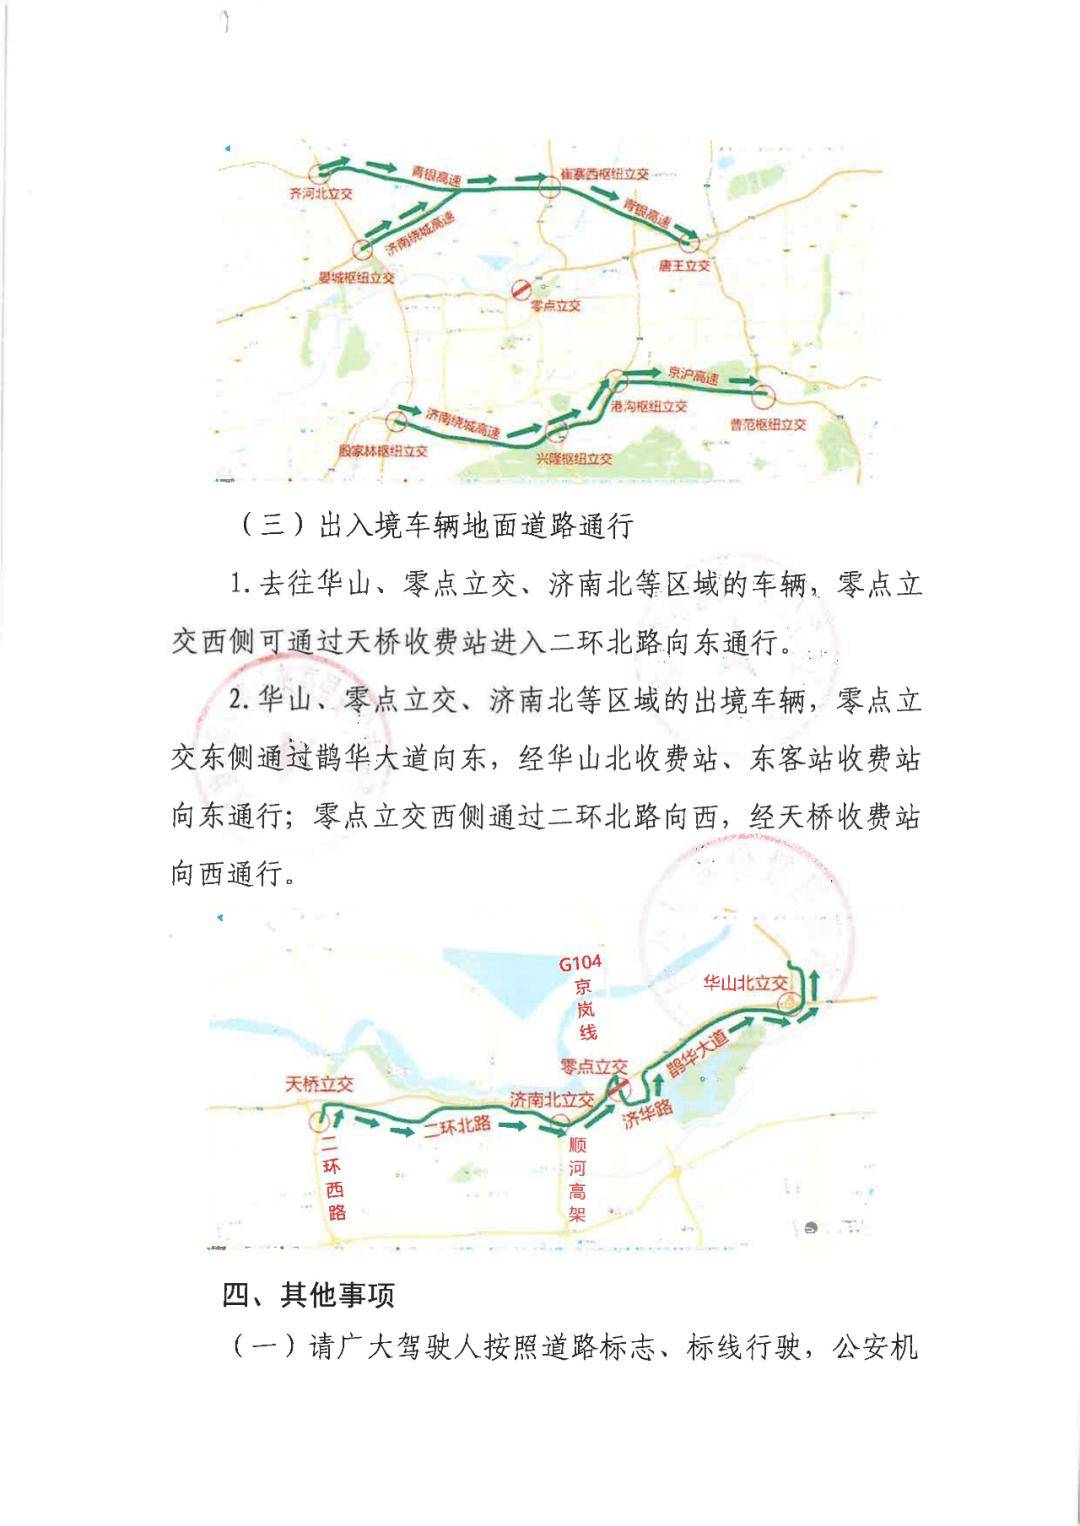 济南货车限行区域图图片